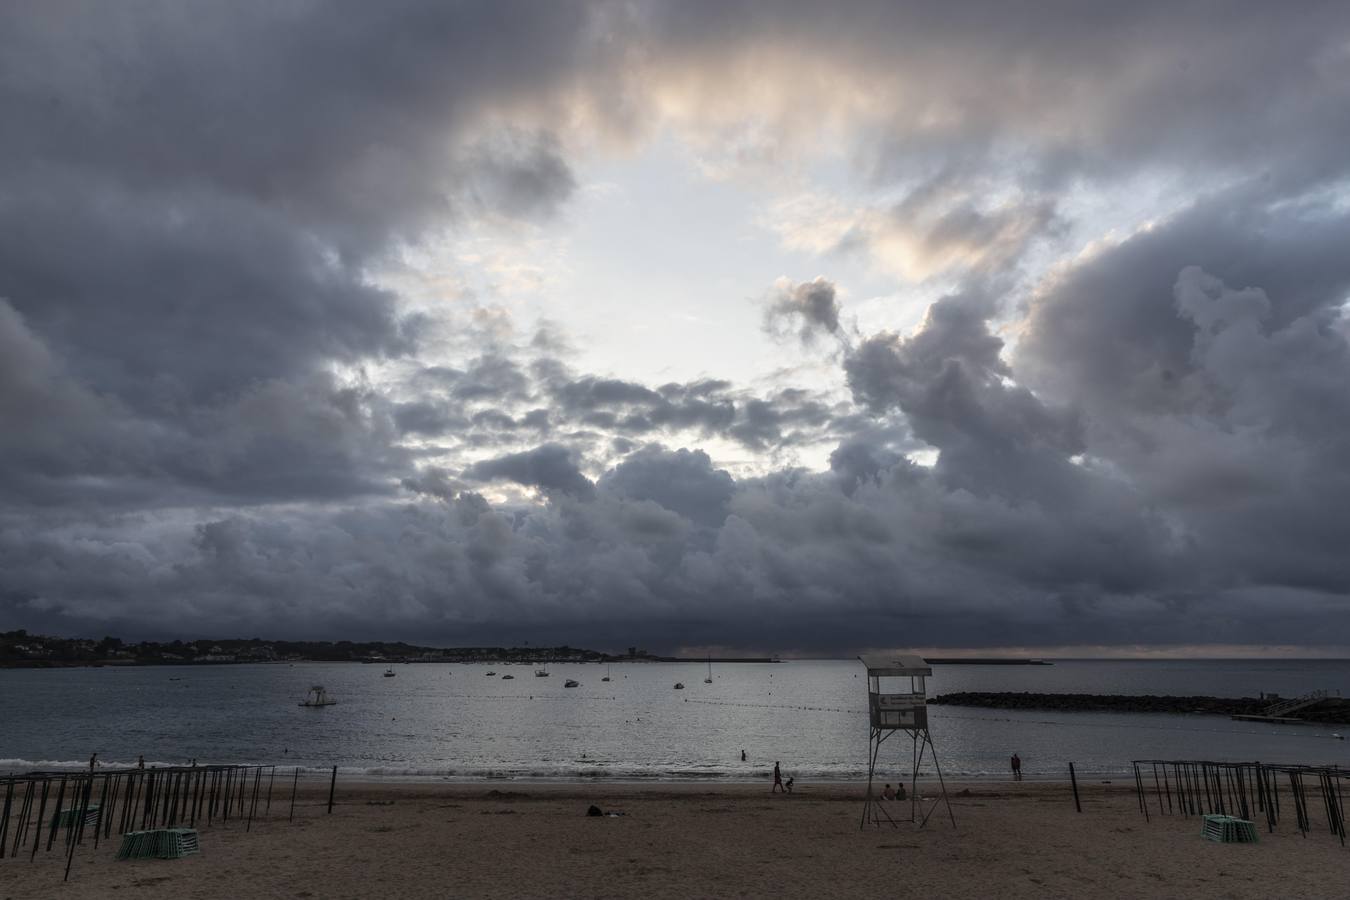 La fotógrafa, frente al teatro del mar, captura la escena en la que los grandes telones de nubes pintadas se van ocluyendo, como un diafragma en el objetivo de la cámara, en vías del momento culminante de la apoteosis del día